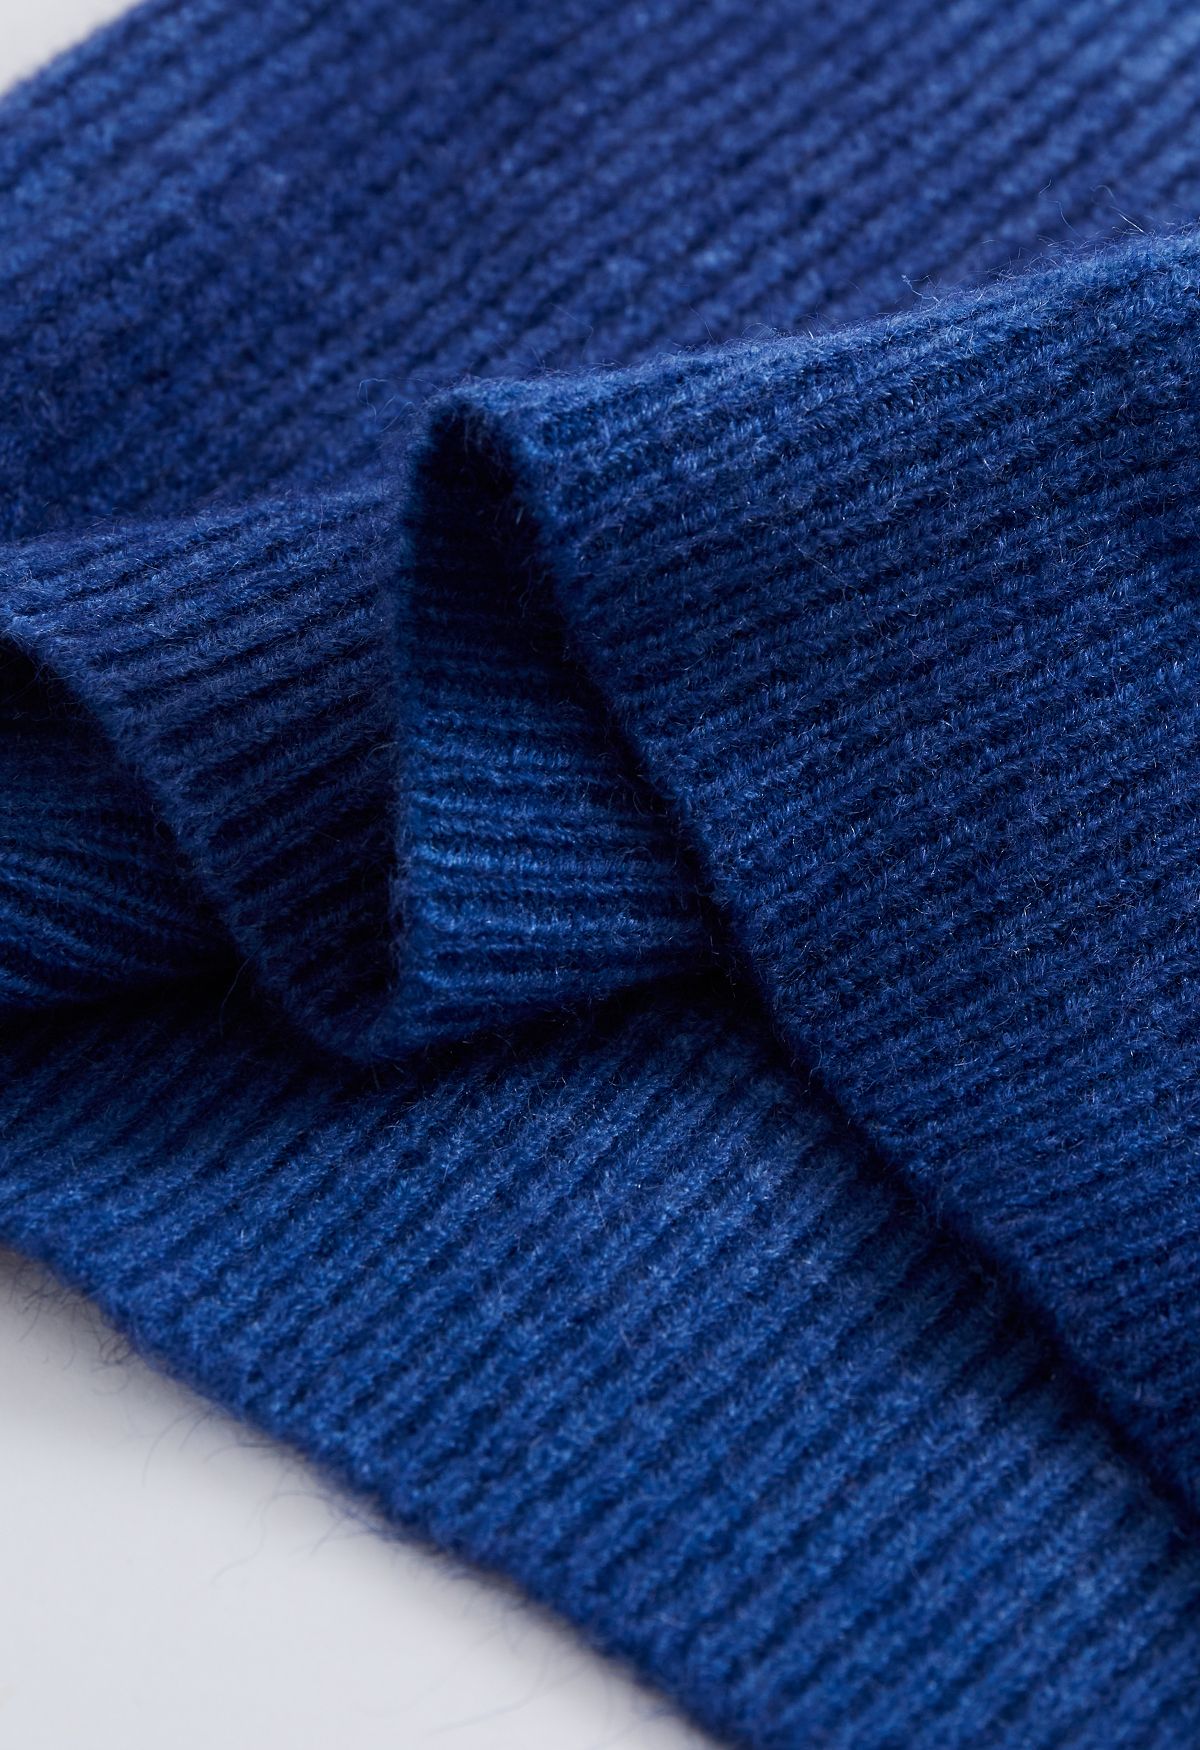 Pull en tricot côtelé à col rond dégradé en bleu